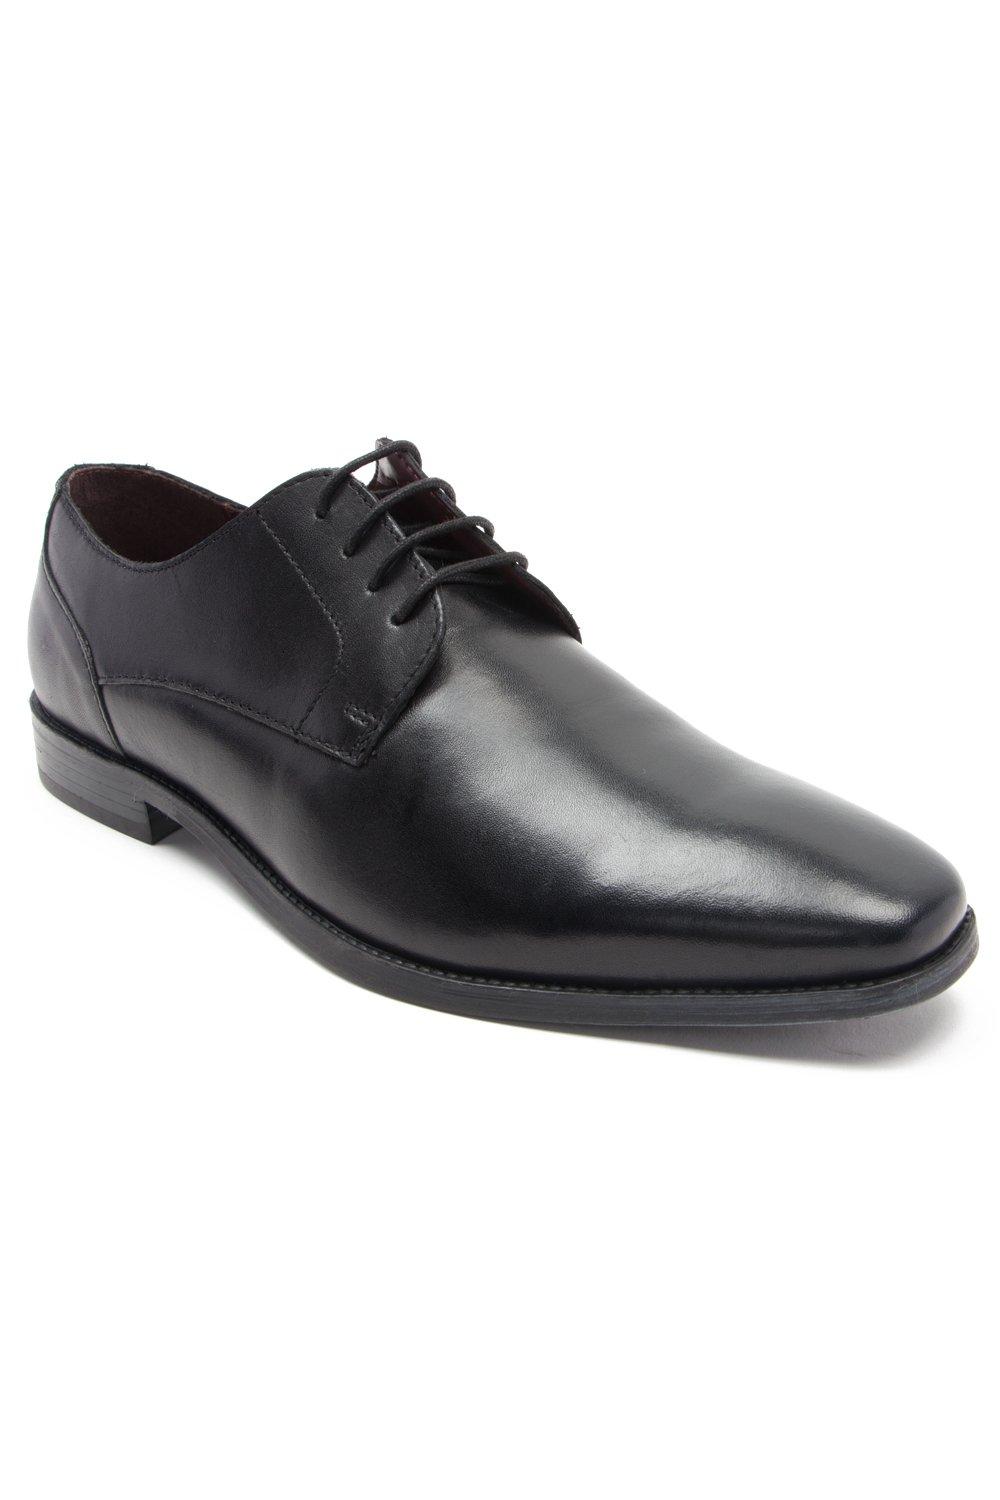 Формальные кожаные туфли дерби на шнуровке 'Falcon' Thomas Crick, черный мужские кожаные деловые туфли на шнуровке для офиса зеленый